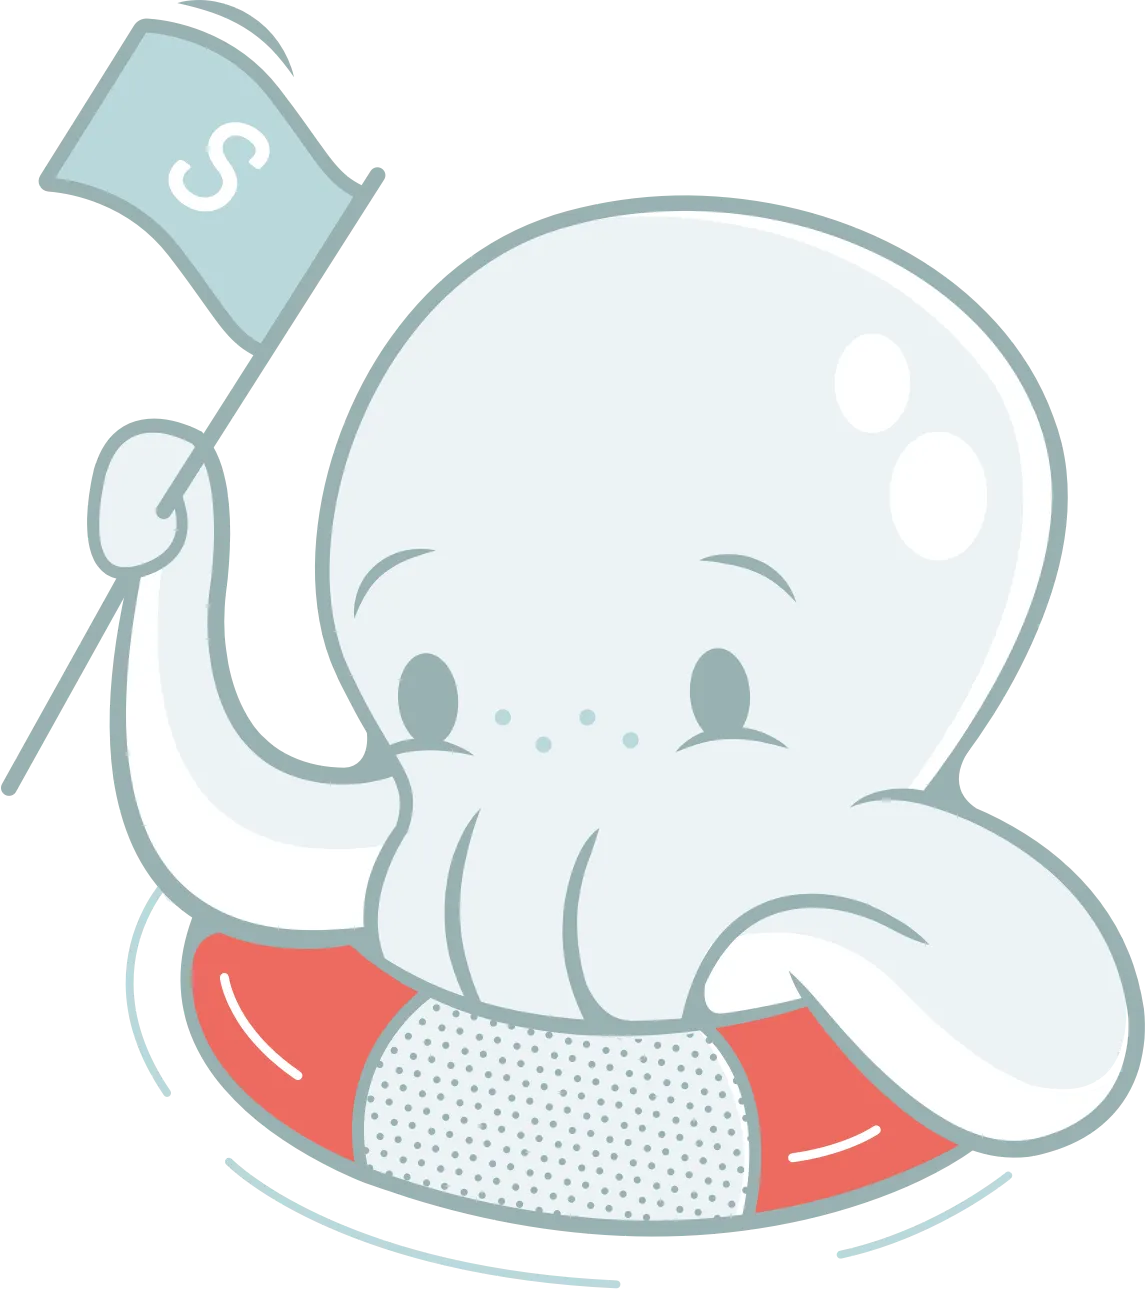 Ship Shape octopus mascot in an innertube